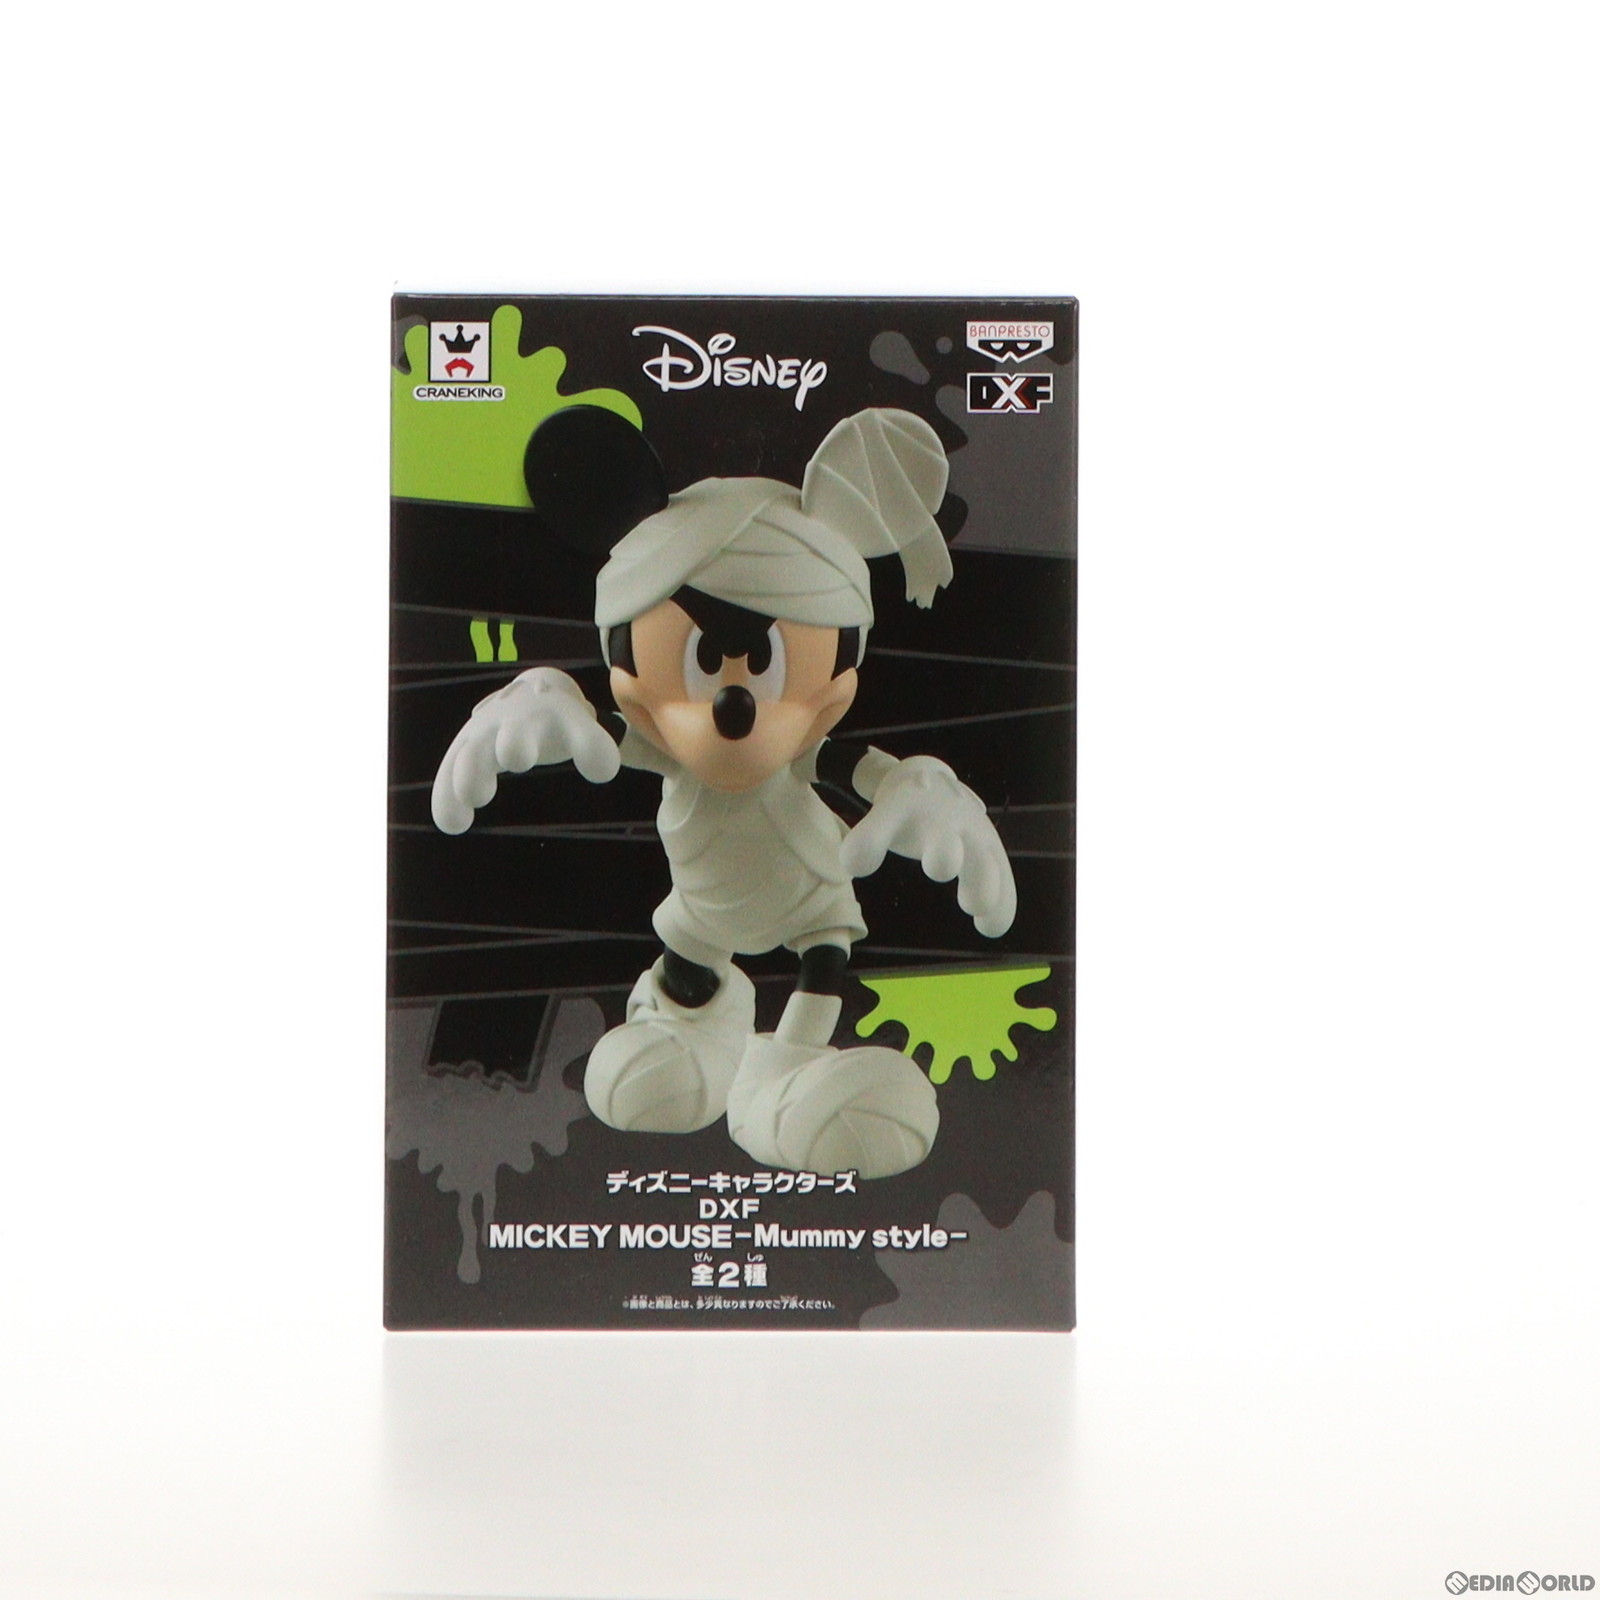 【中古即納】[FIG]ミッキーマウス(オフホワイト) ディズニーキャラクターズ DXF MICKEY MOUSE -Mummy style- フィギュア プライズ(37689)